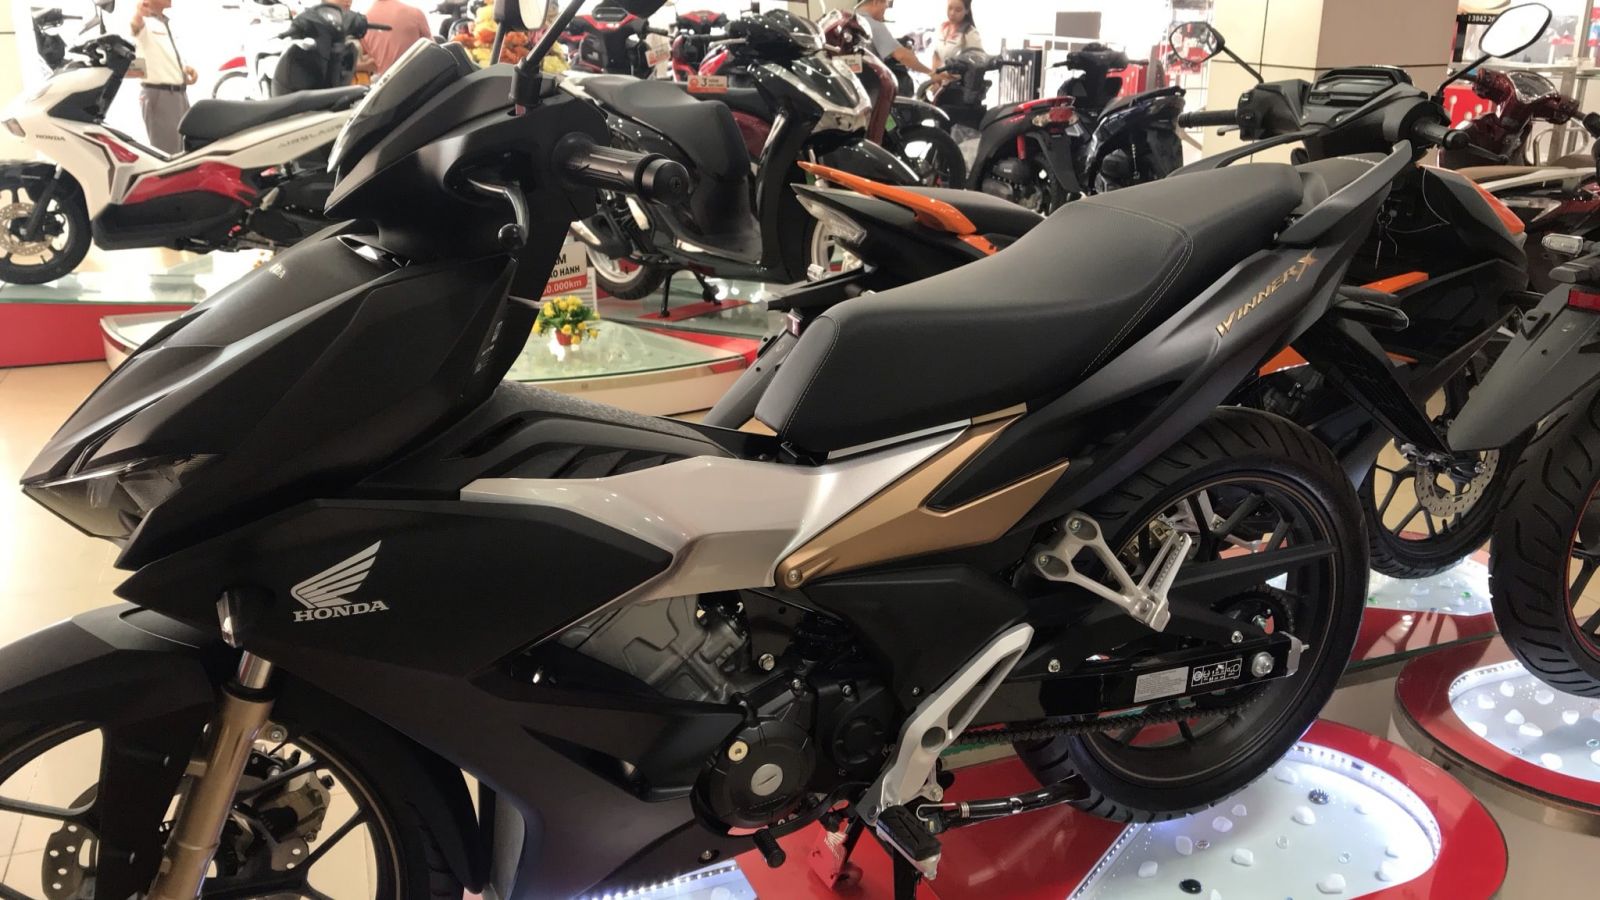 Bán xe máy tại Bắc Ninh mới nhất 2019  Danh mục Bán xe máy tại Bắc Ninh  mới nhất 2019  Xe Hơi Việt  Chợ Mua Bán Xe Ô Tô